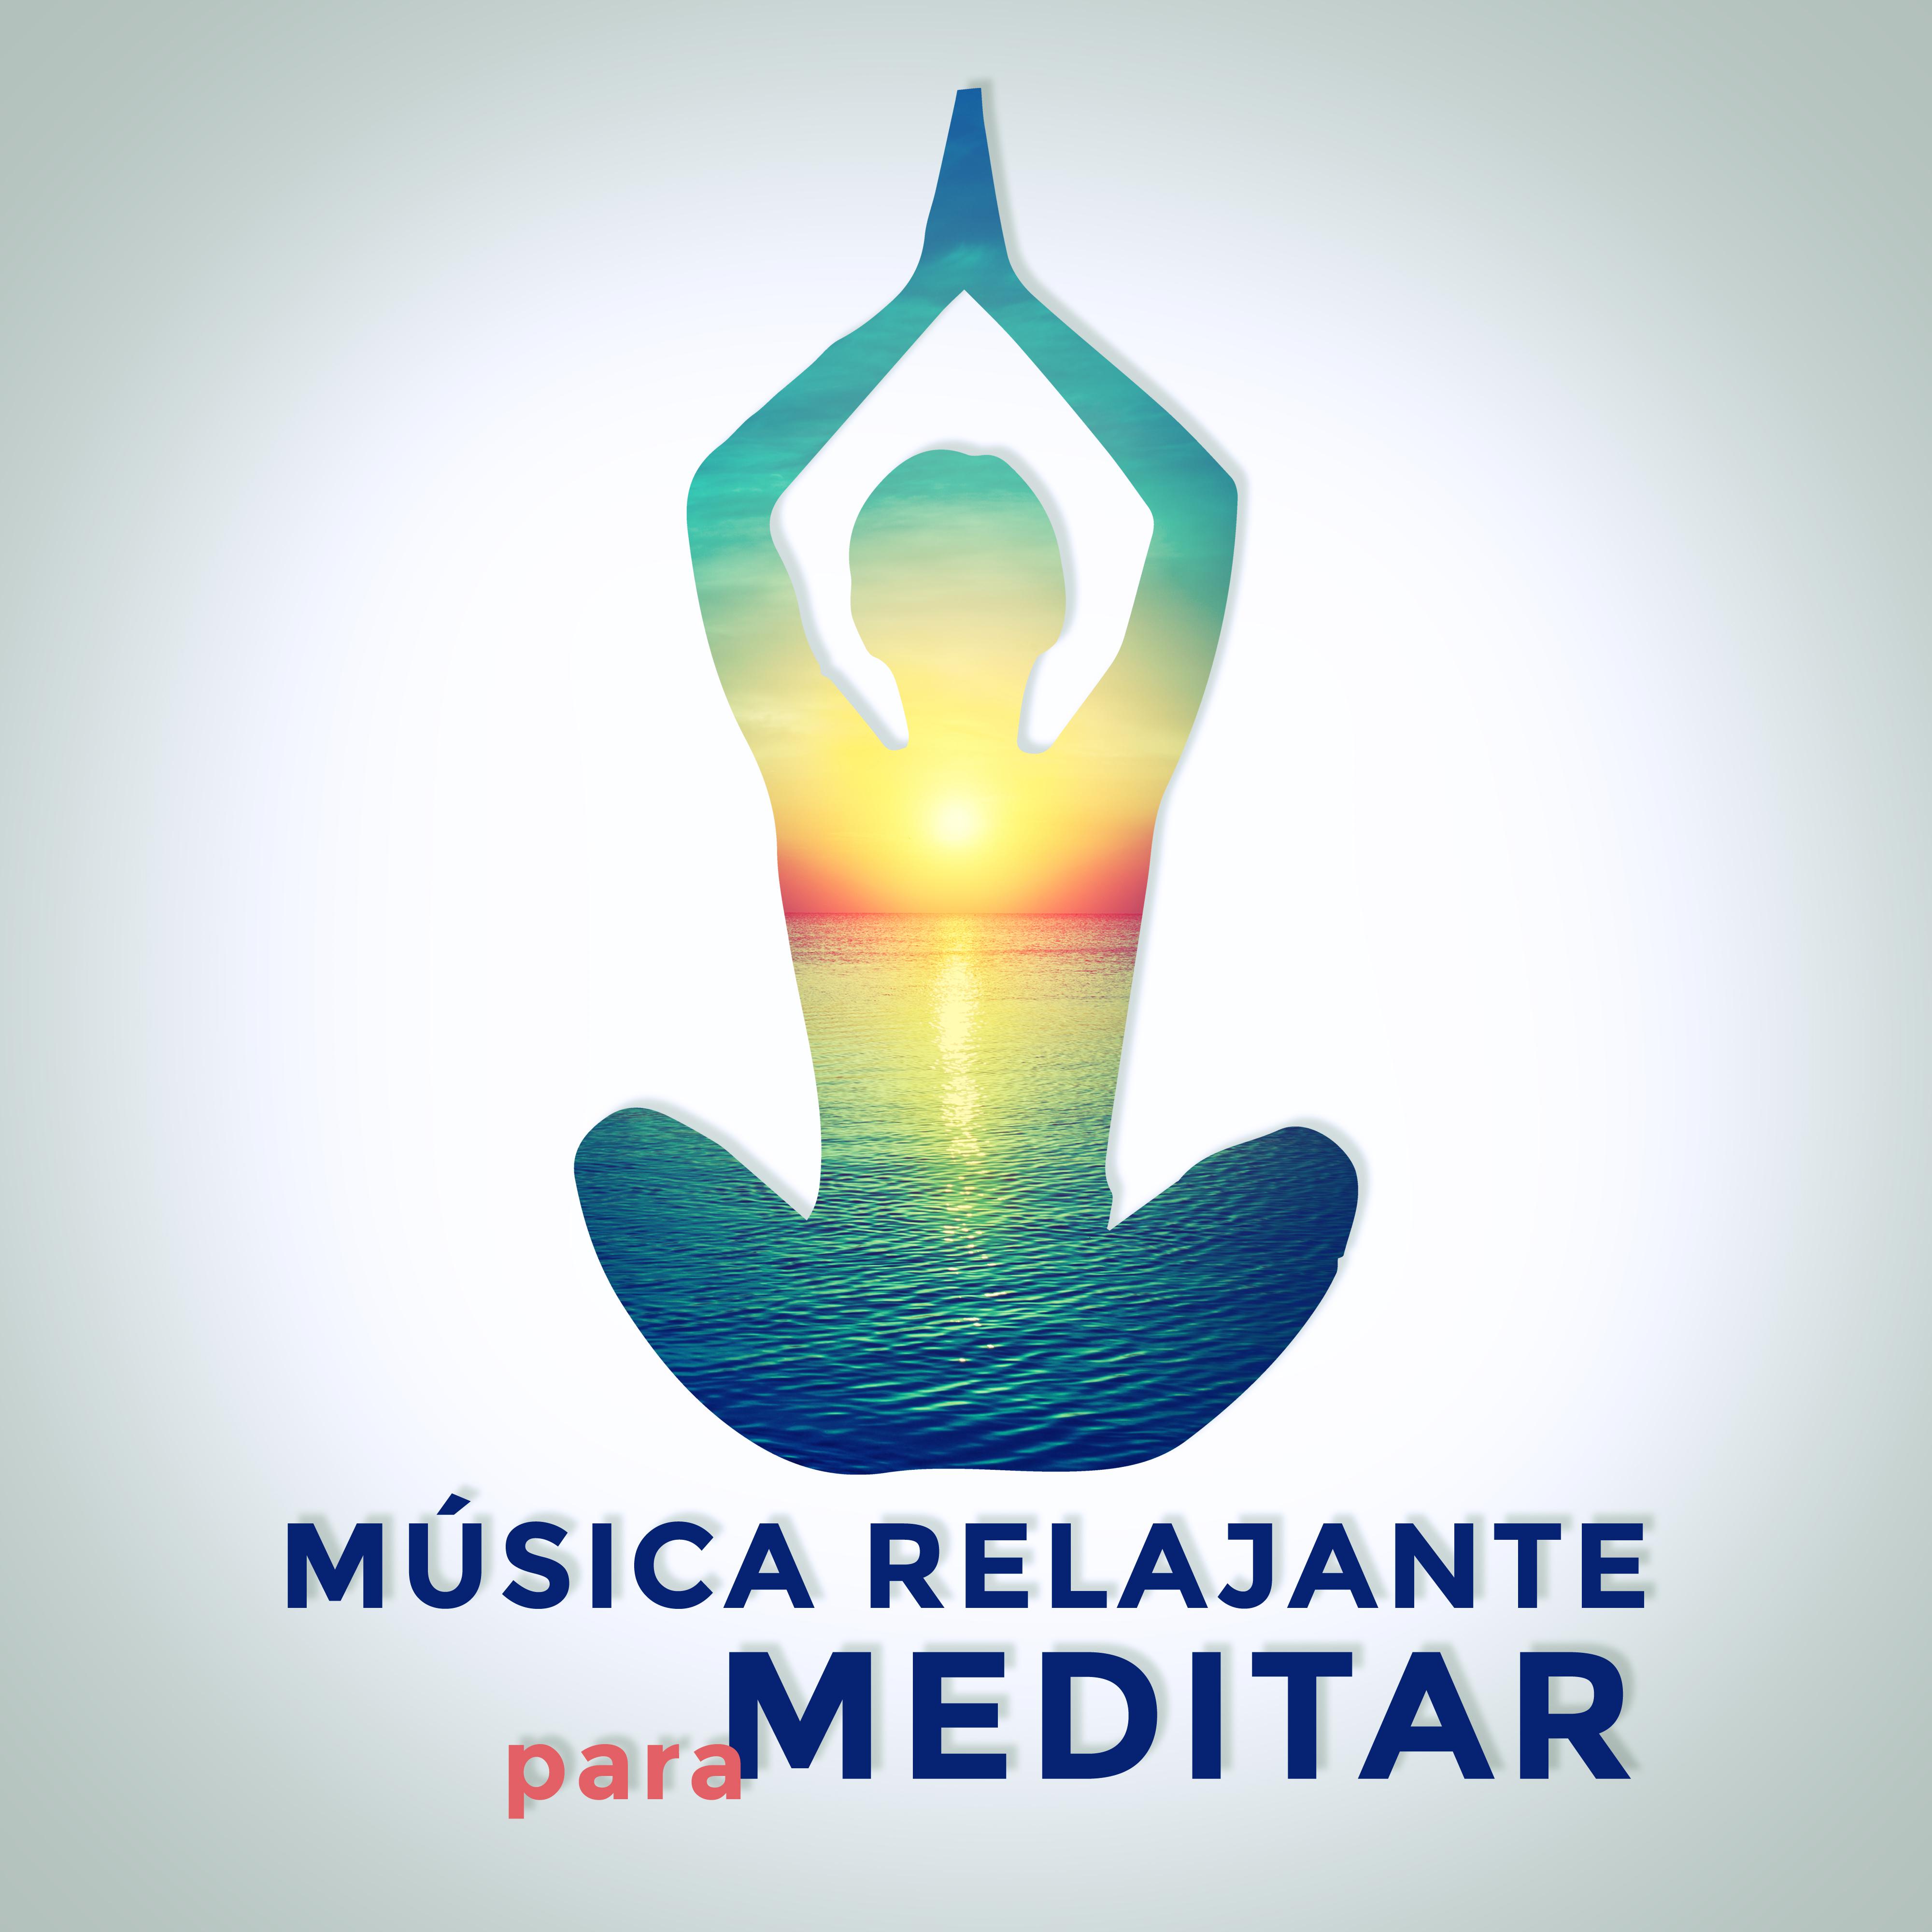 Música Relajante para Meditar – Sonidos de la Calma, Descansa y Medita, Libre de Estrés